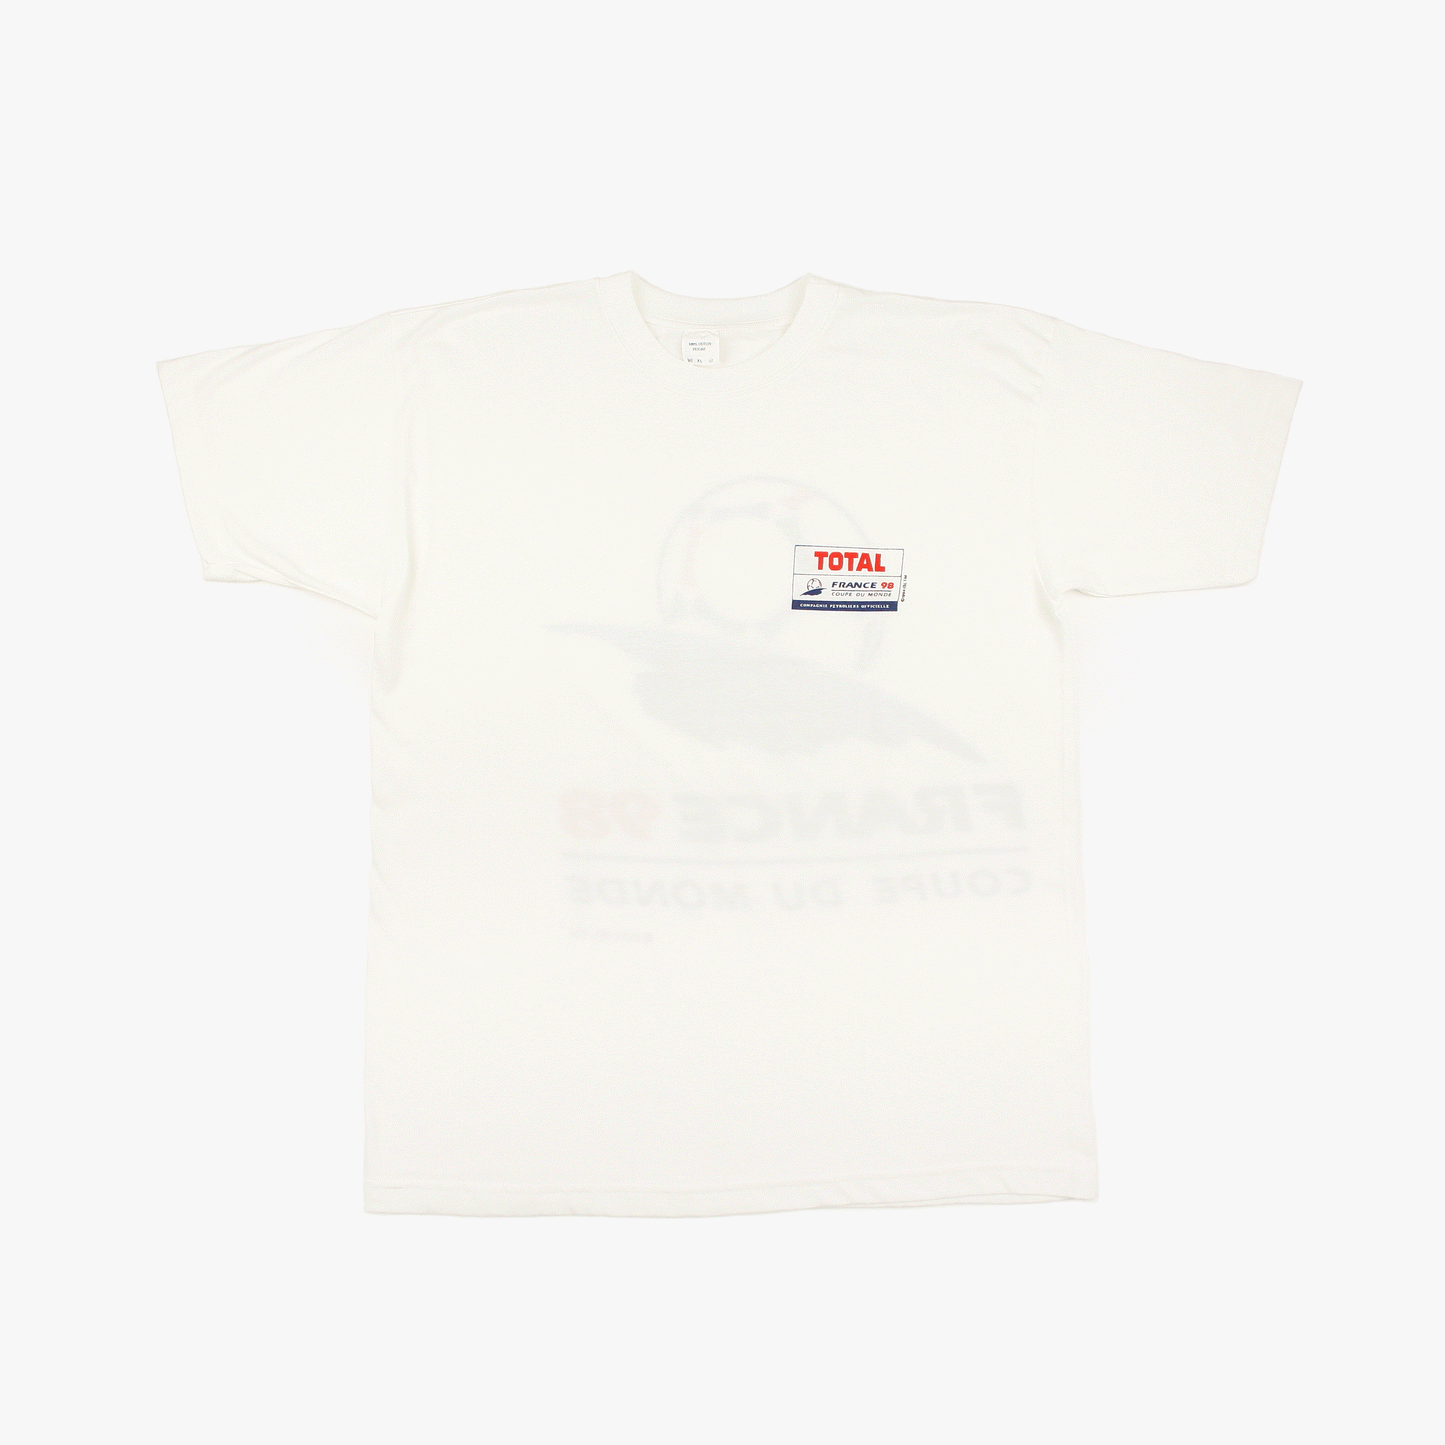 France 98 • Official Merchandise T-Shirt • XL